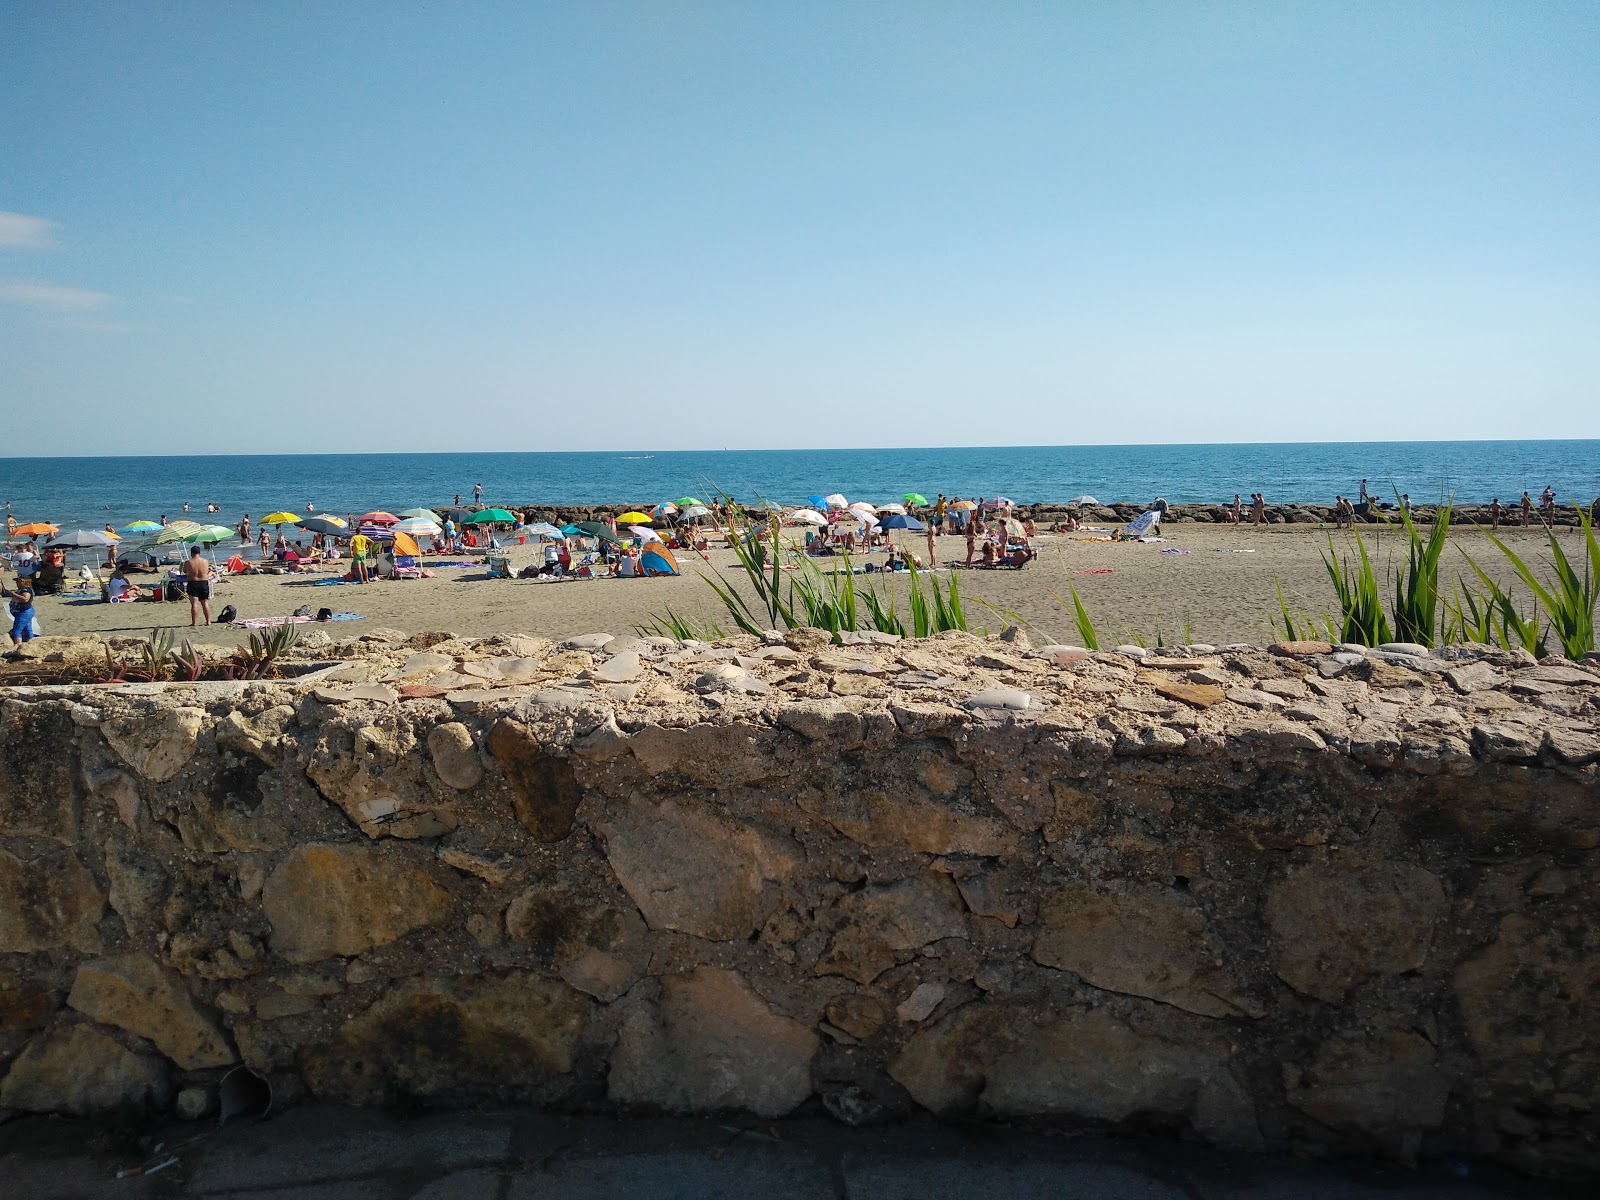 Zdjęcie Il Castello beach - popularne miejsce wśród znawców relaksu